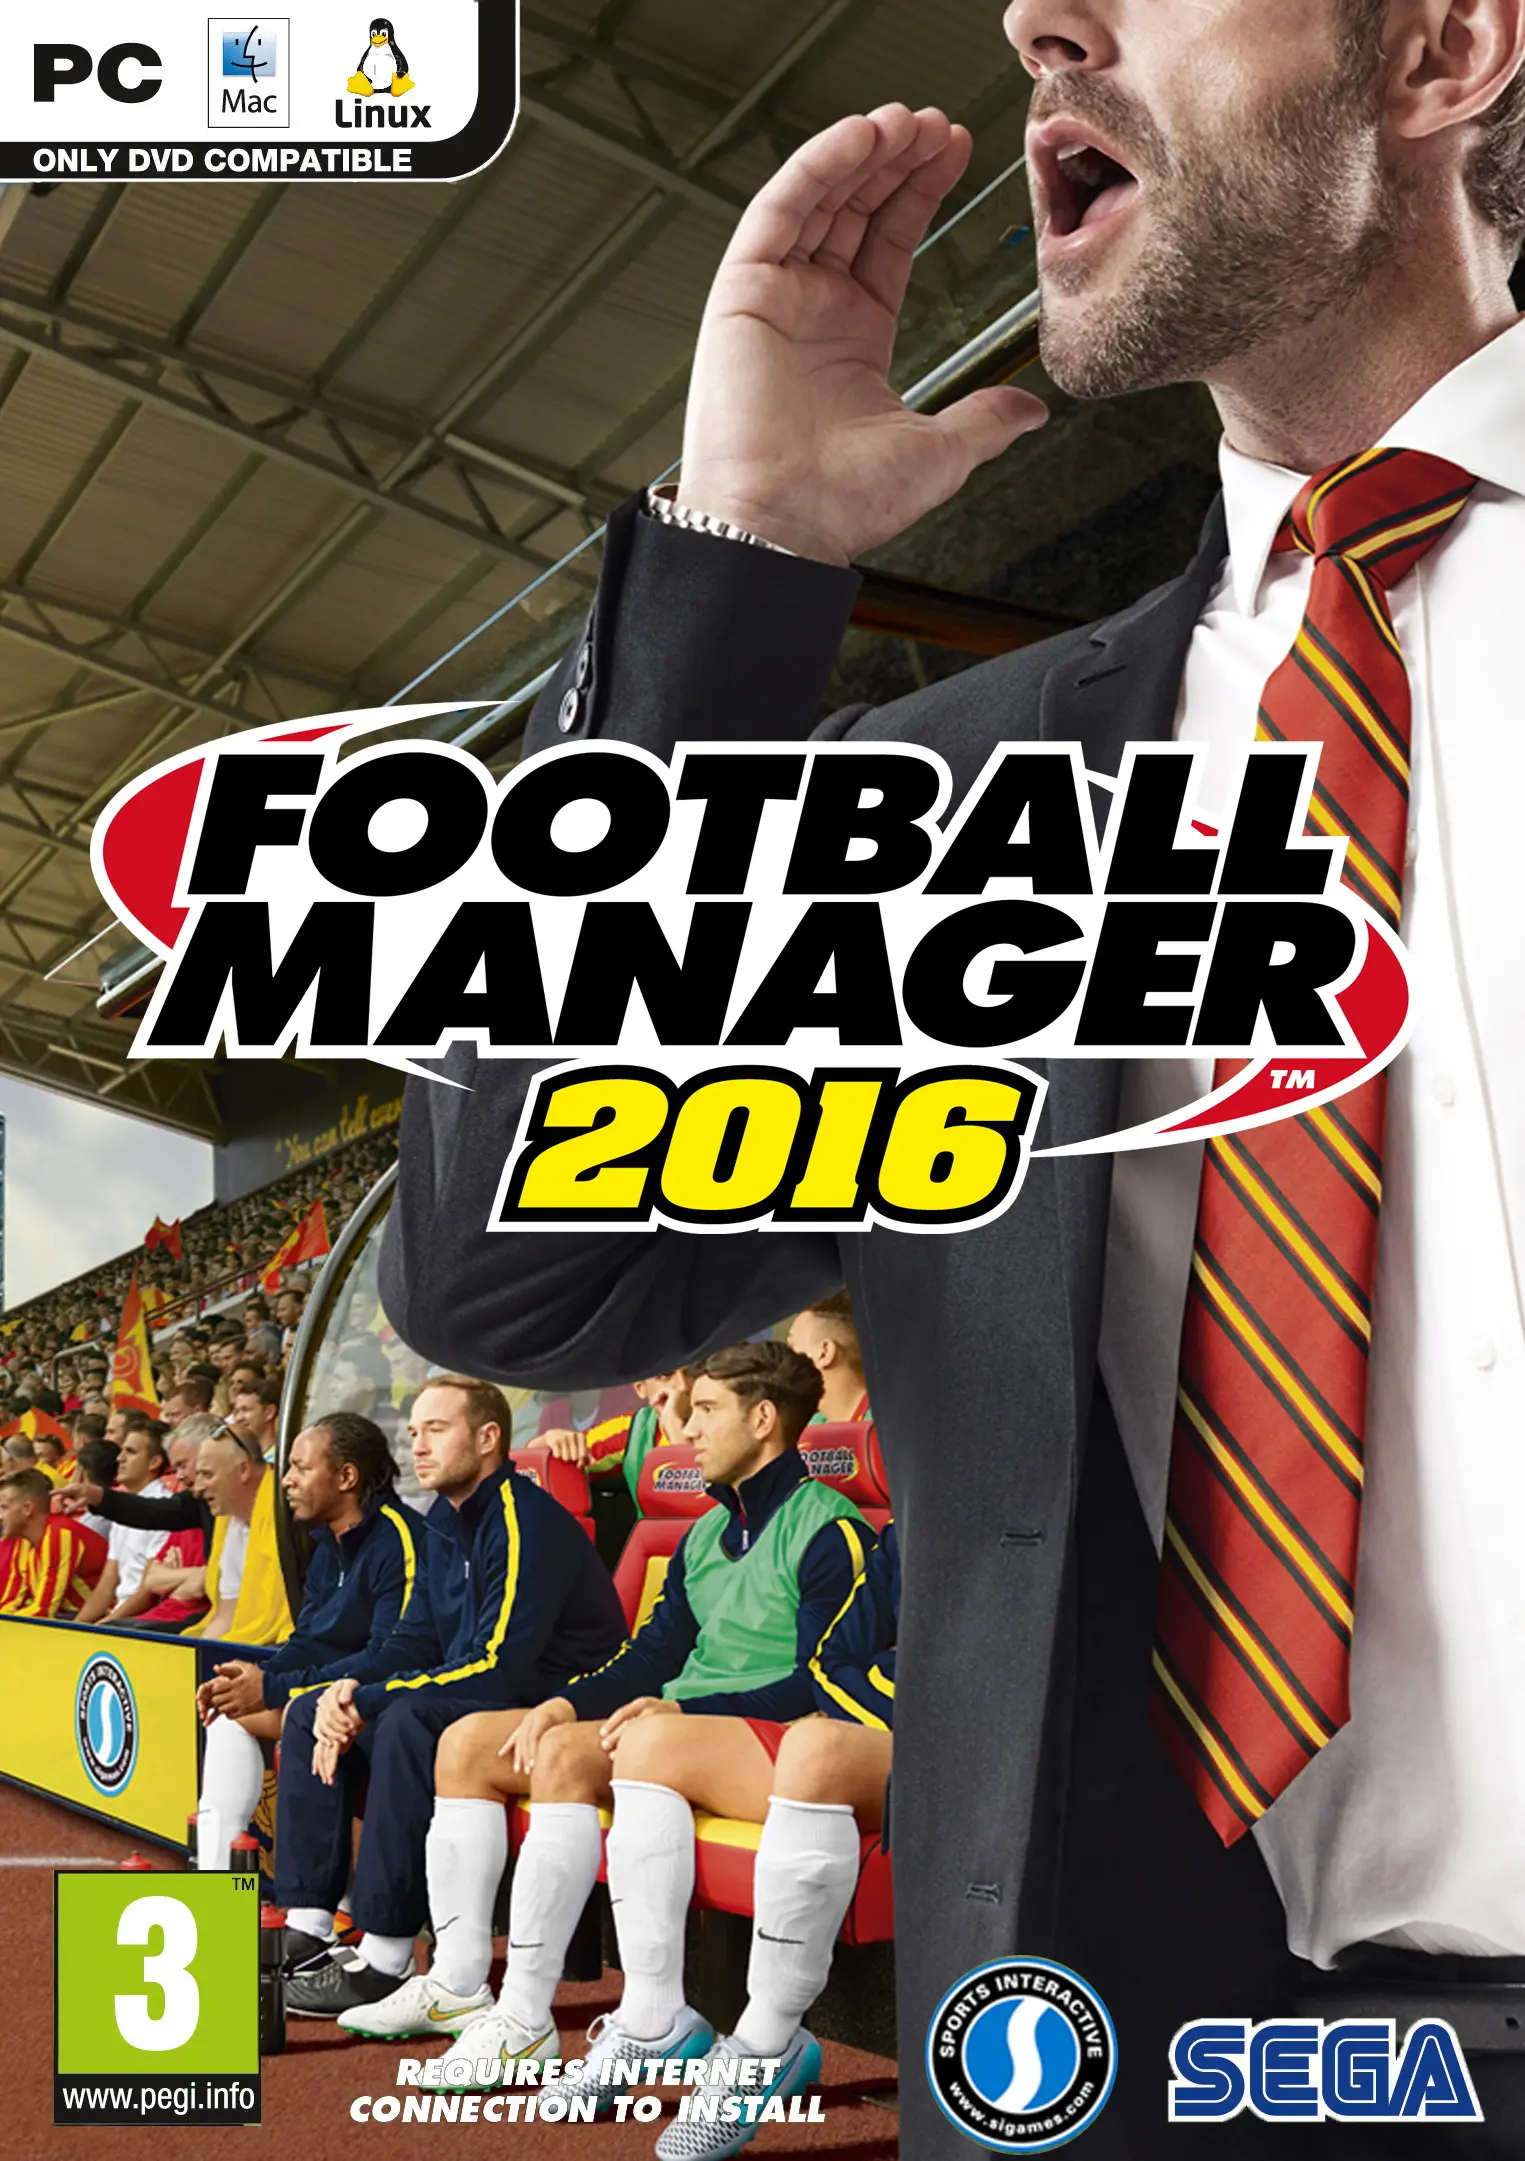 Football Manager 2016 (EU) (PC) - Steam - Digital Code